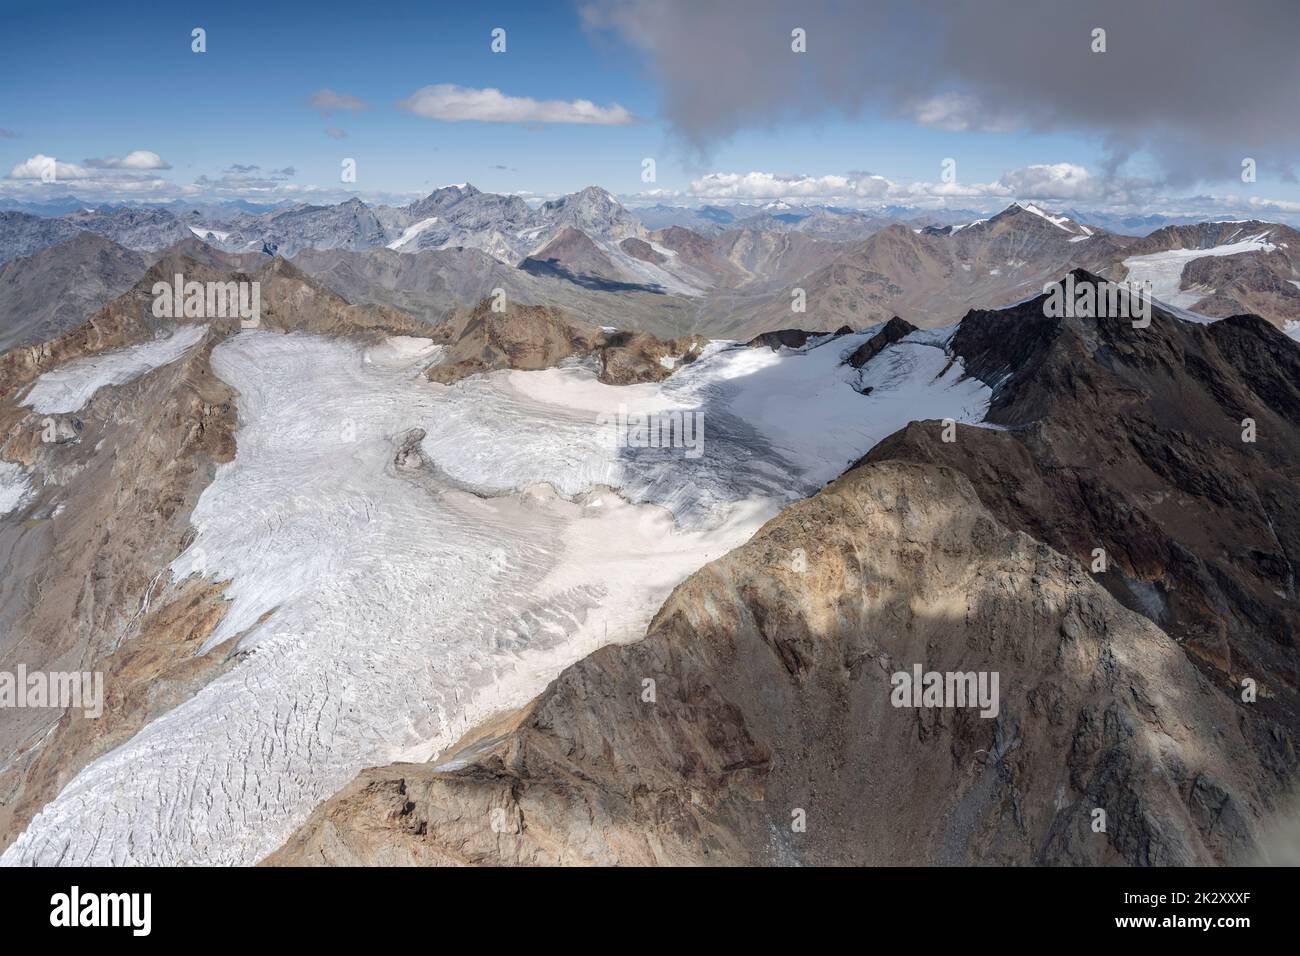 Ripresa aerea, da un aliante, del ghiacciaio di Dosegu ridotto dal riscaldamento globale , ripresa da sud-ovest in luce estiva, Alpi, Italia Foto Stock